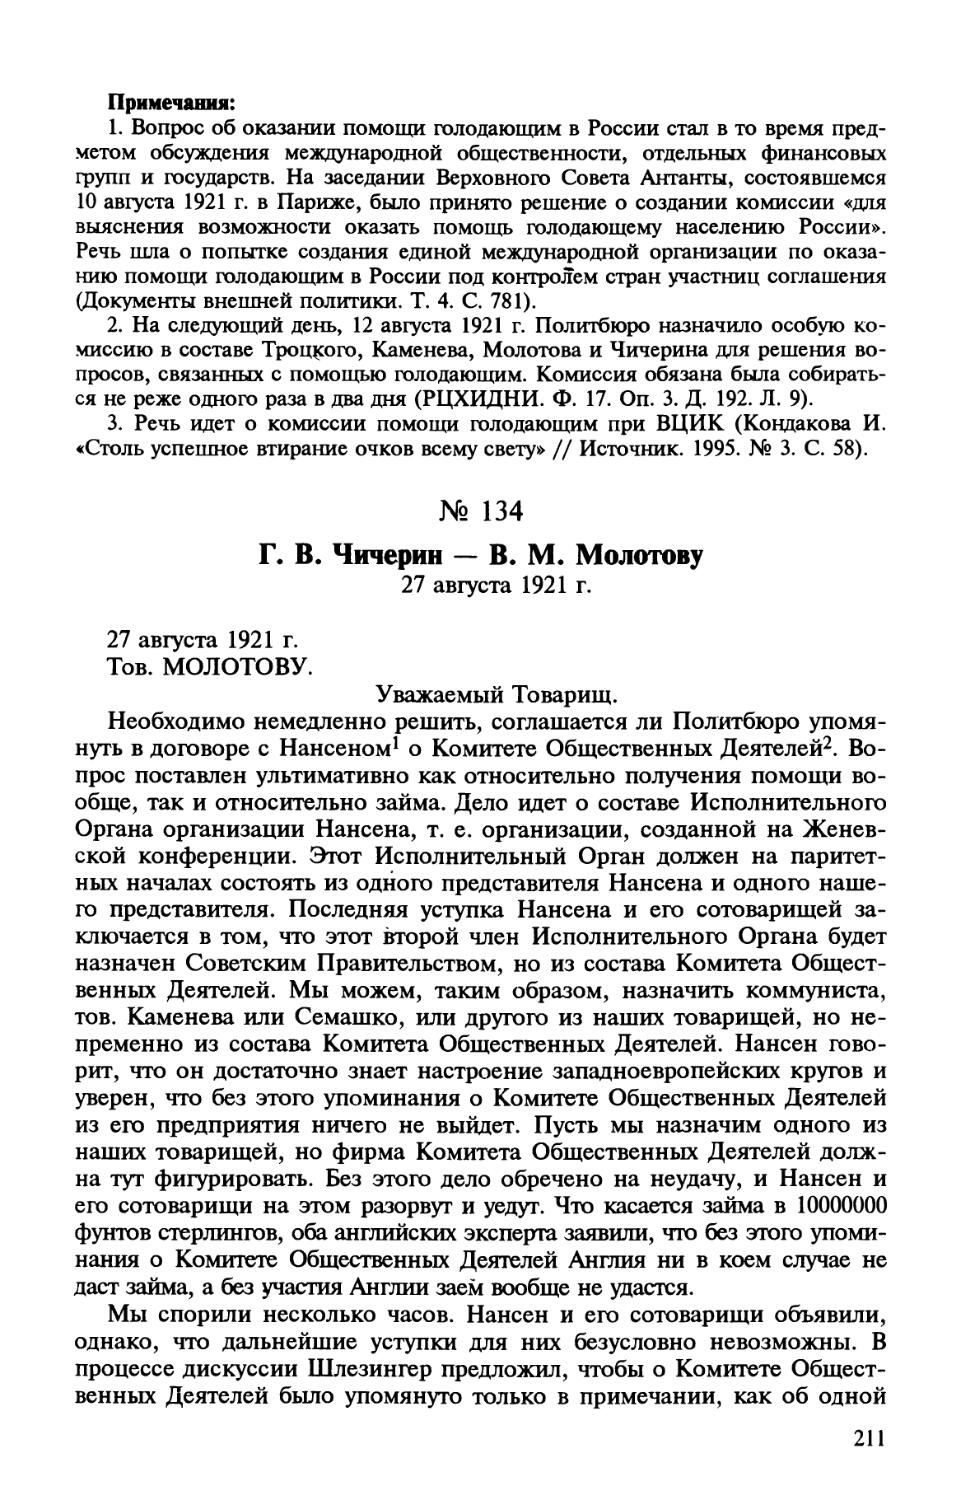 134. Г. В. Чичерин — В. М. Молотову. 27 августа 1921 г.